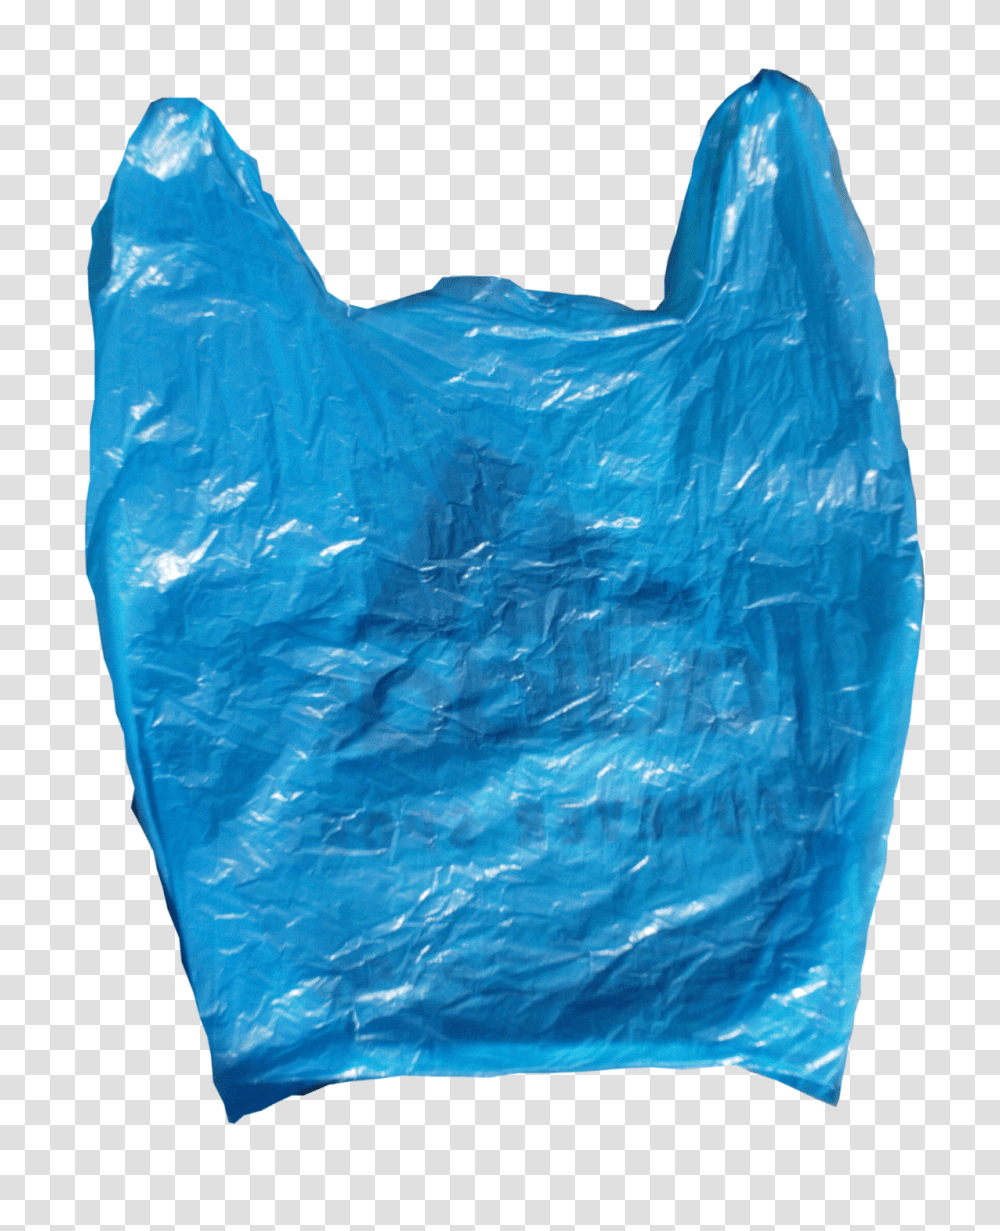 Plastic Bag Transparent Png